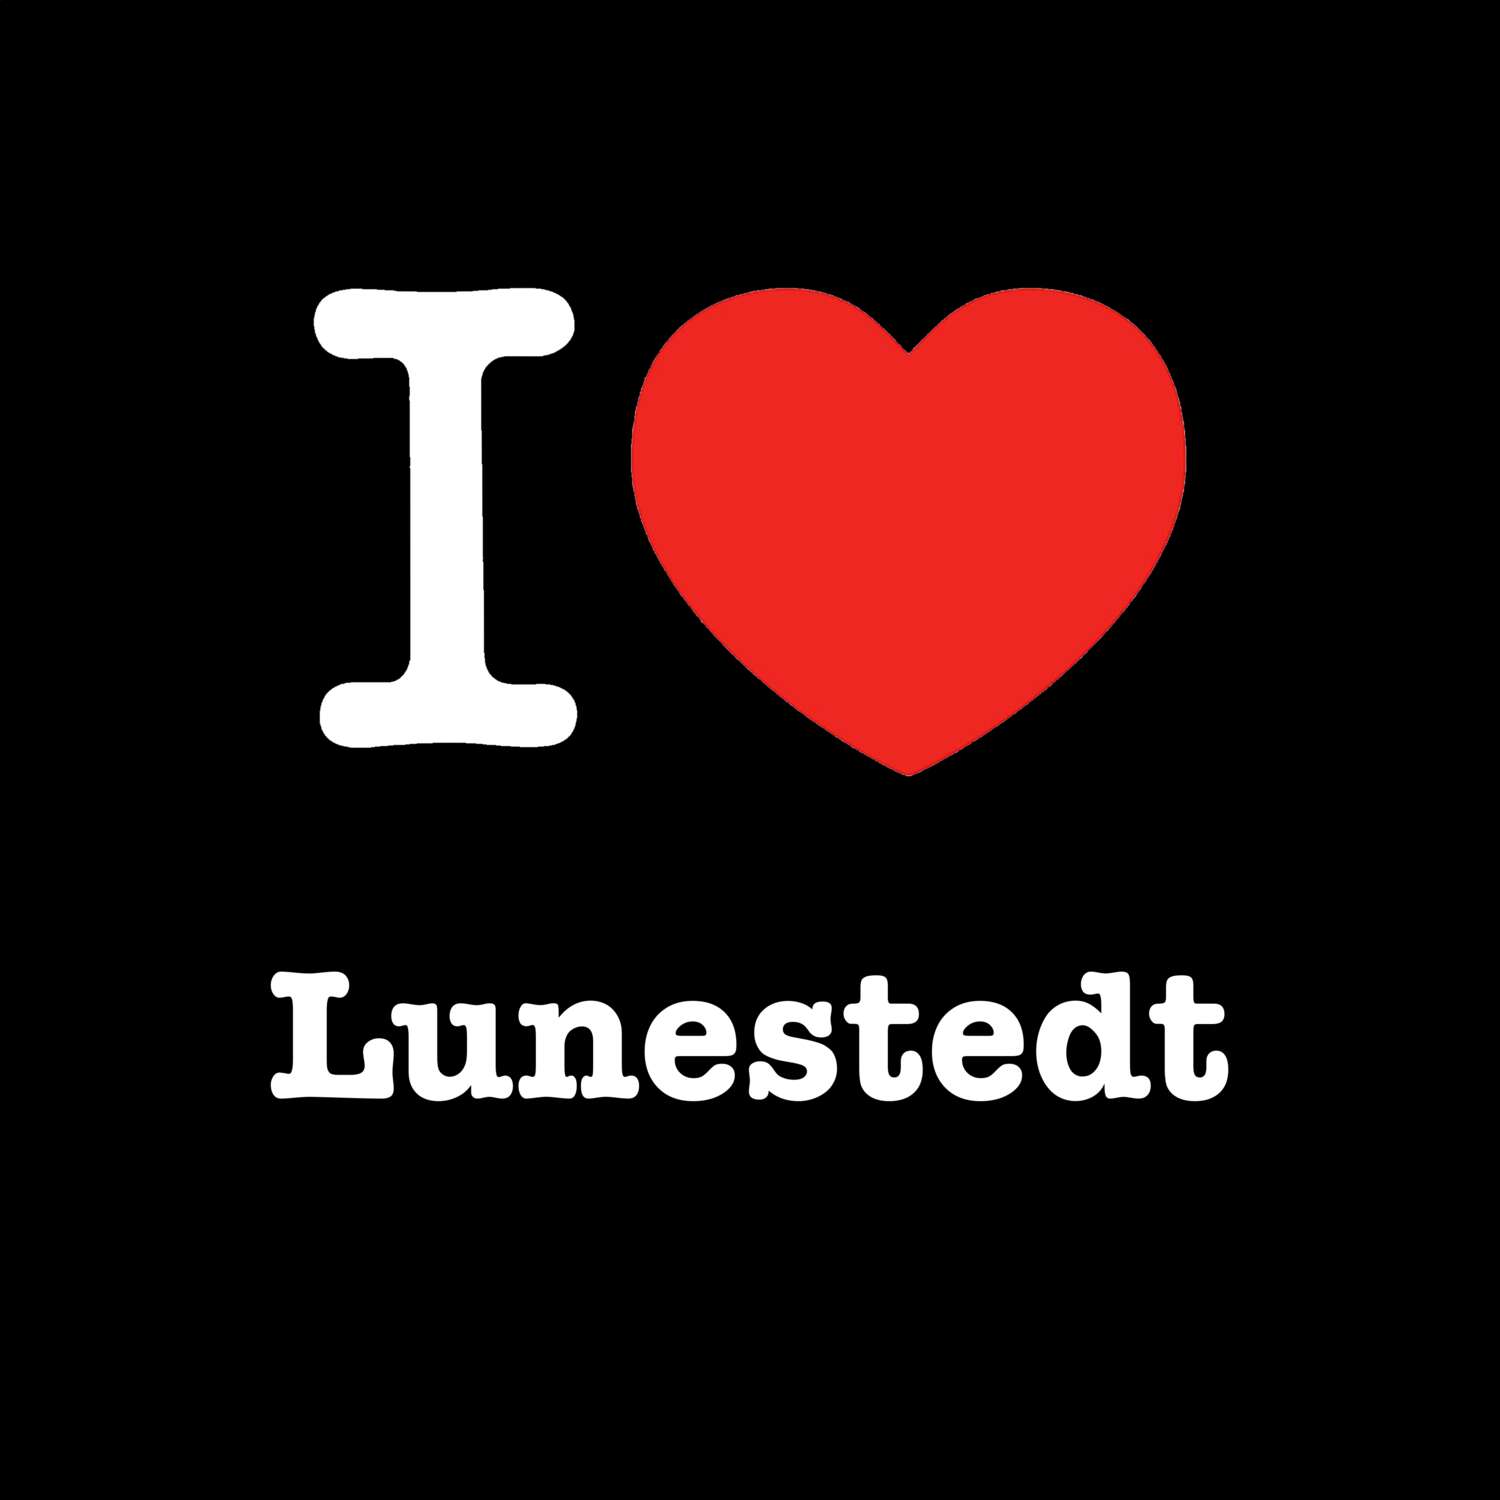 Lunestedt T-Shirt »I love«